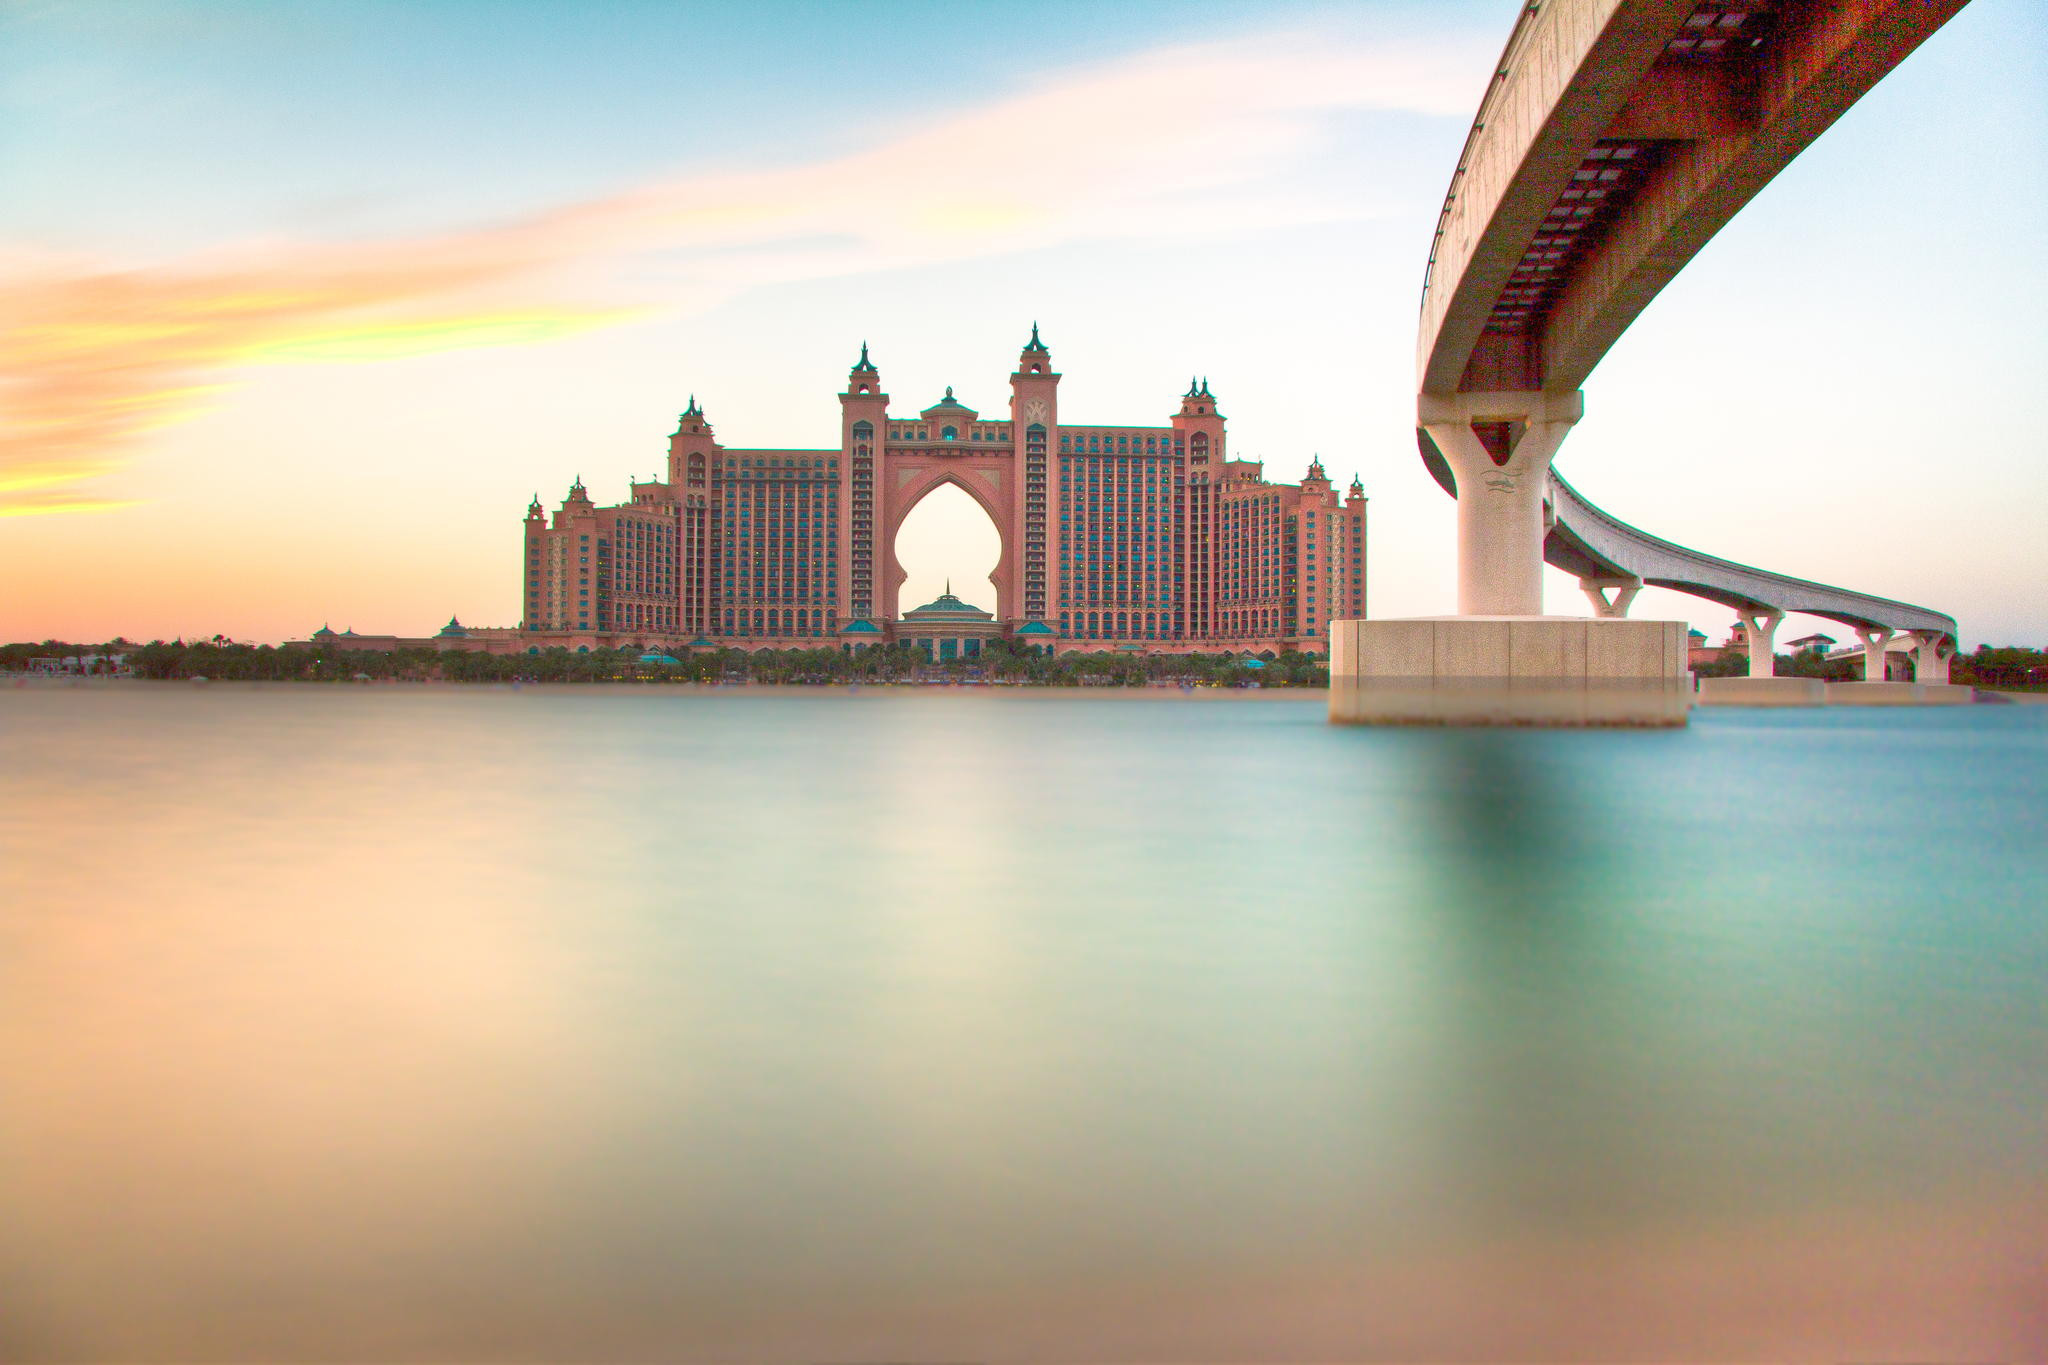 Пятизвездочный отель Atlantis с великолепным видом на Персидский залив находится в Дубае на острове Пальма Джумейра